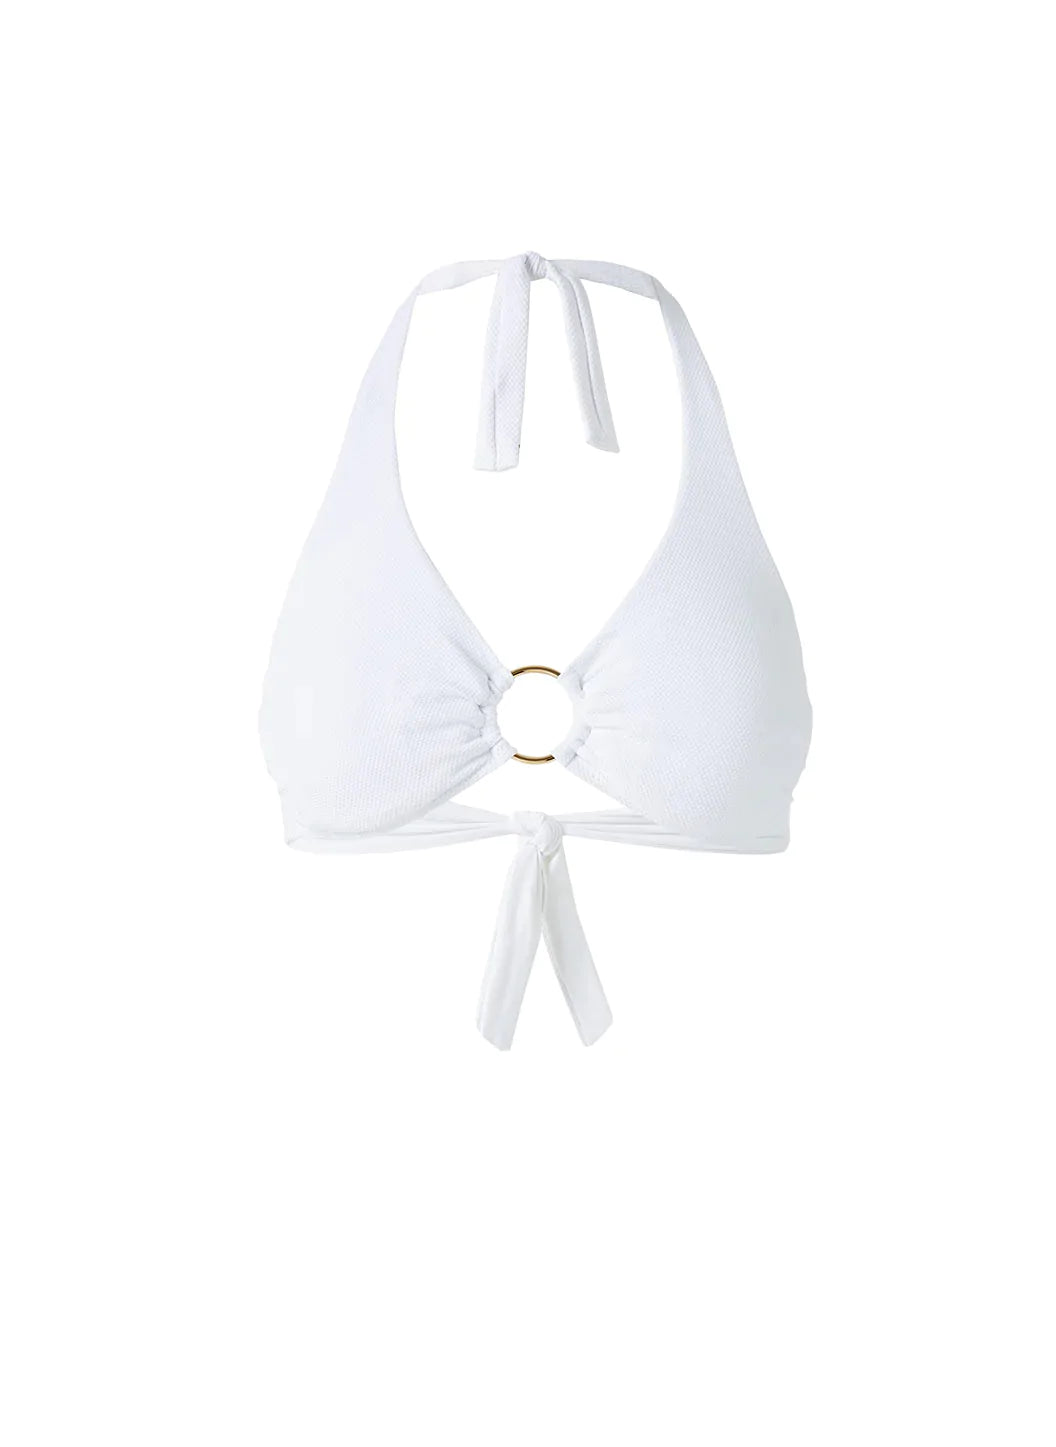 Brussels White Pique Bikini Top Cutout 2023 